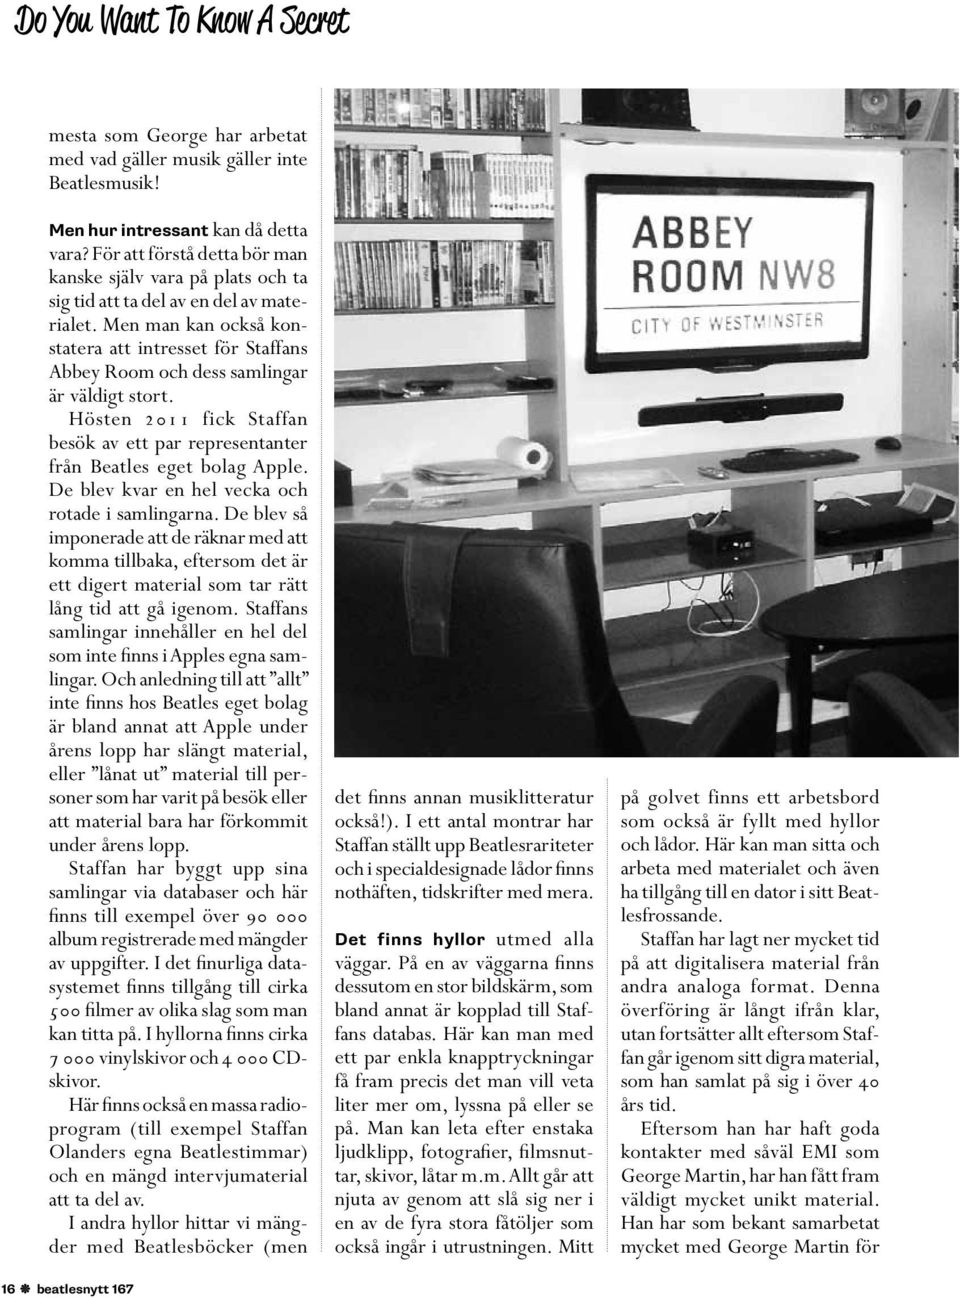 Men man kan också konstatera att intresset för Staffans Abbey Room och dess samlingar är väldigt stort. Hösten 2011 fick Staffan besök av ett par representanter från Beatles eget bolag Apple.